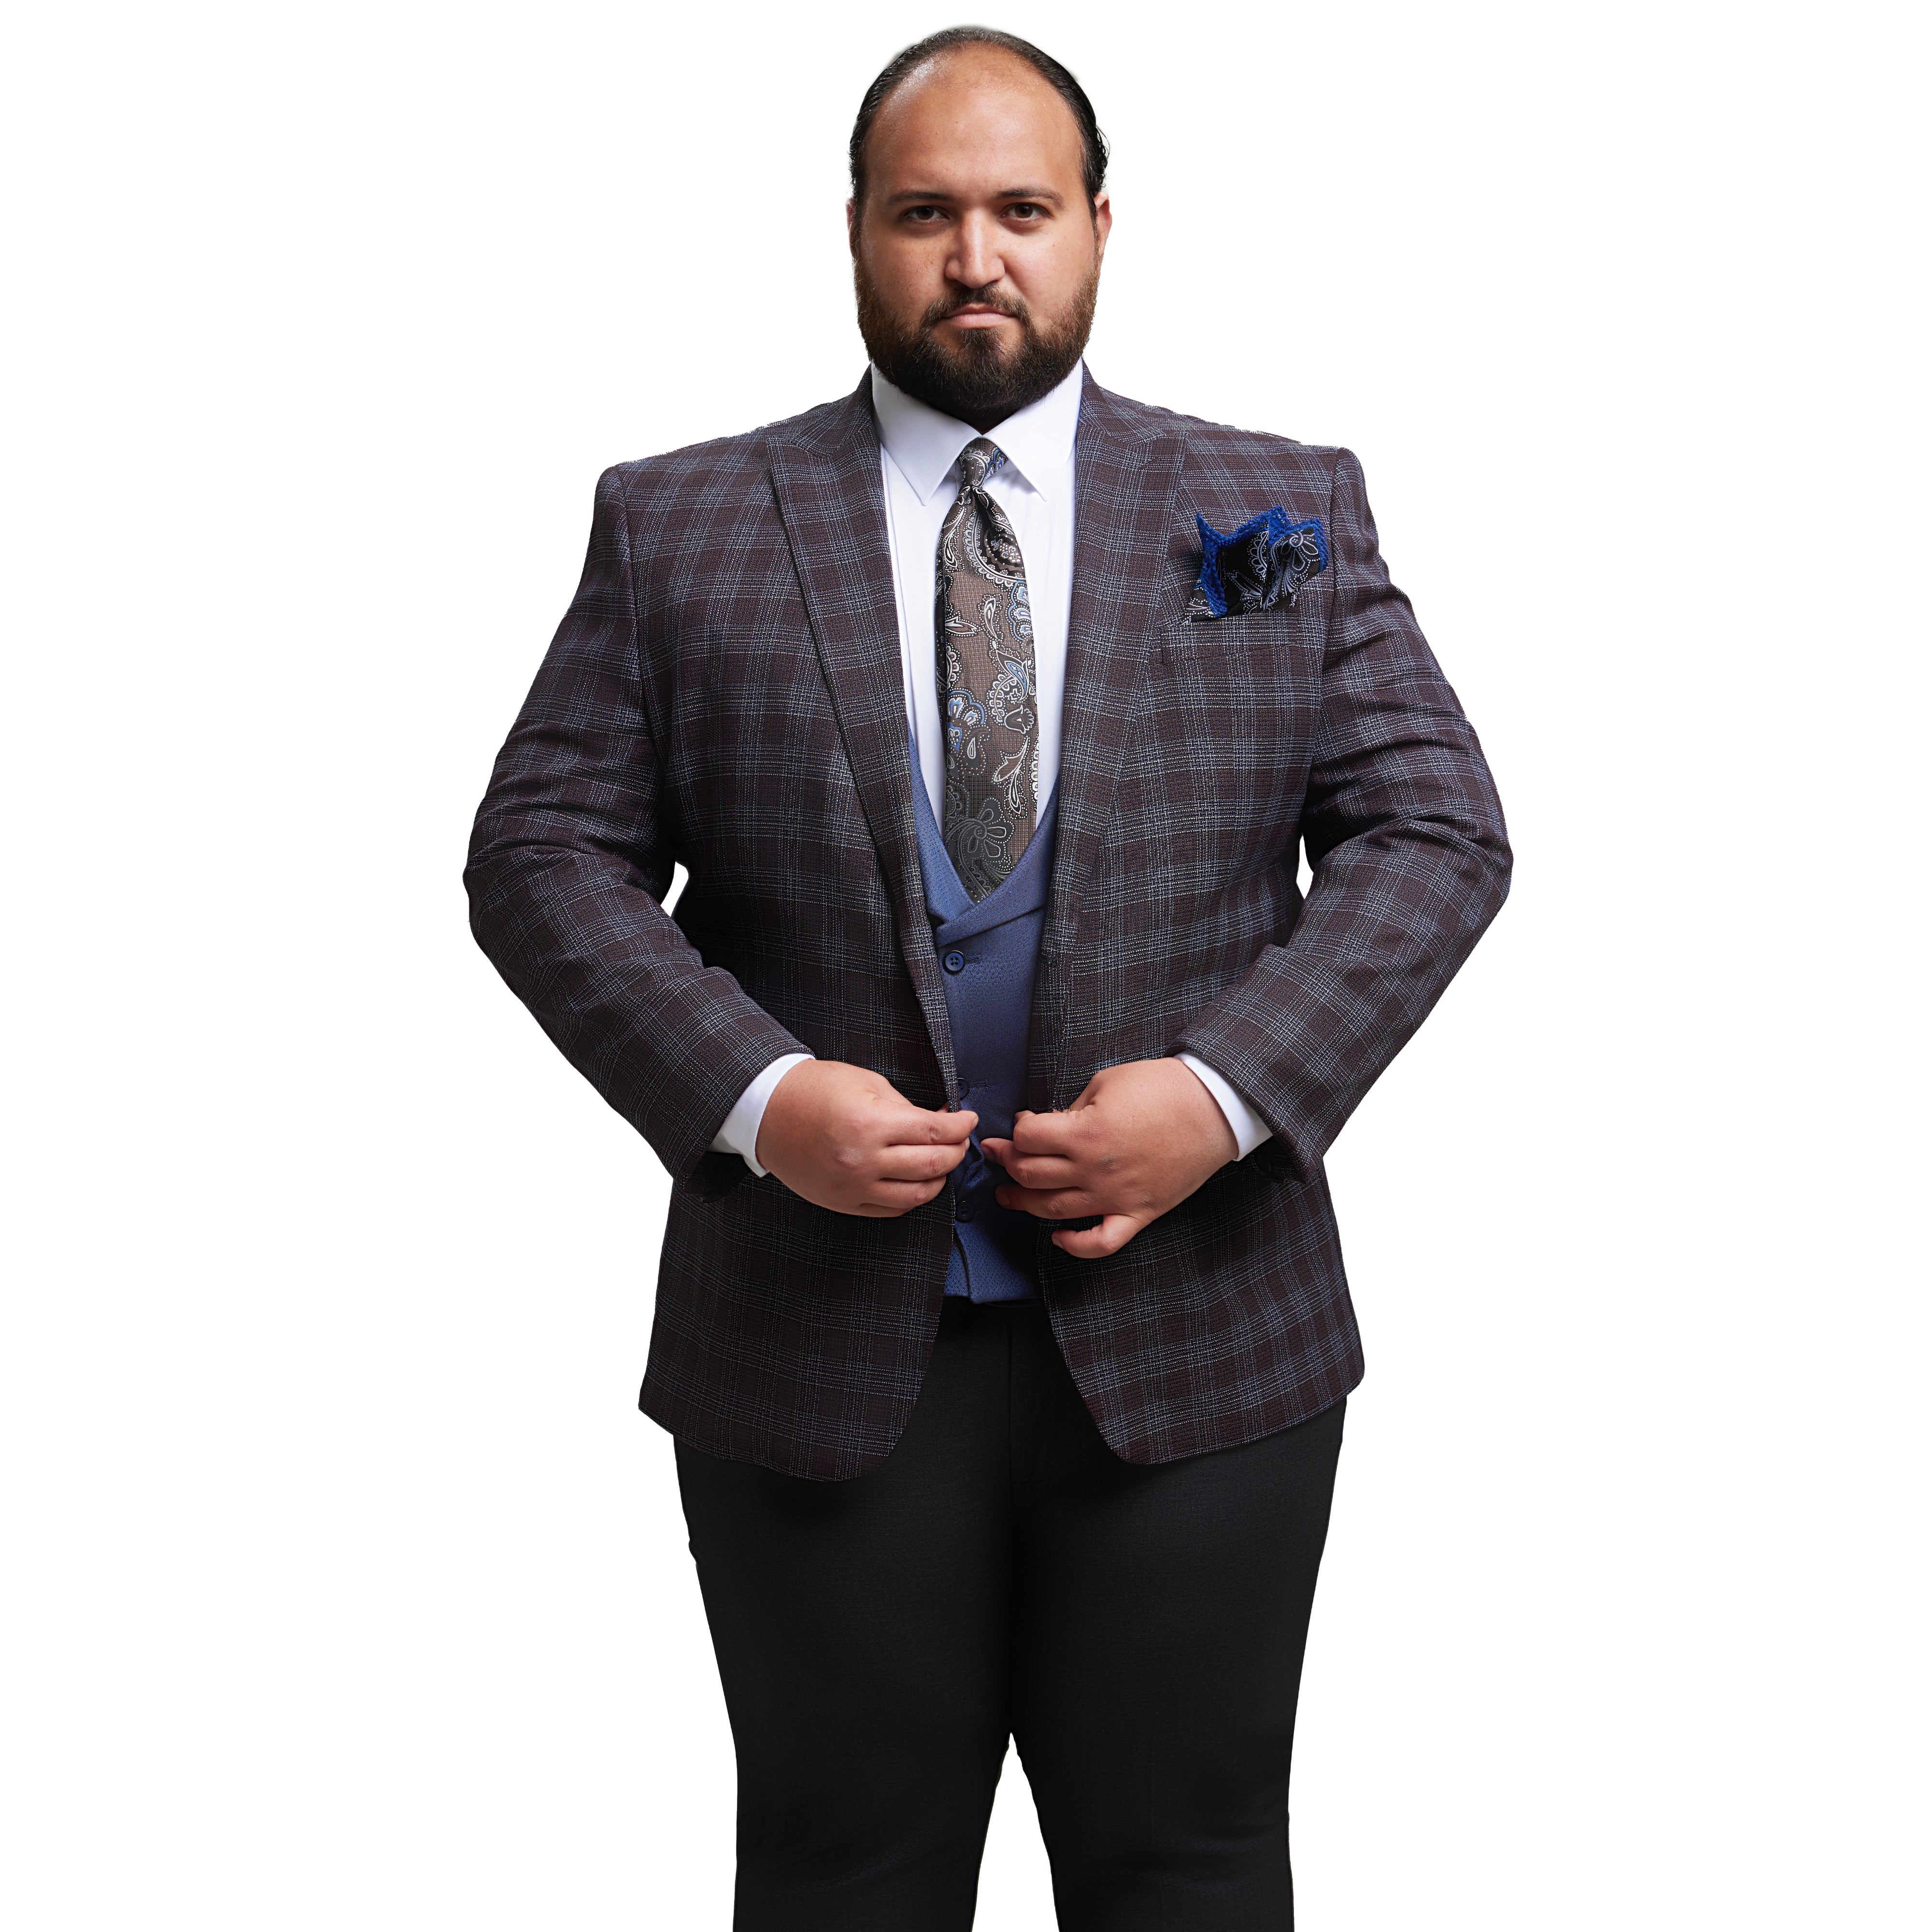 Plus size suit – Ben Soliman